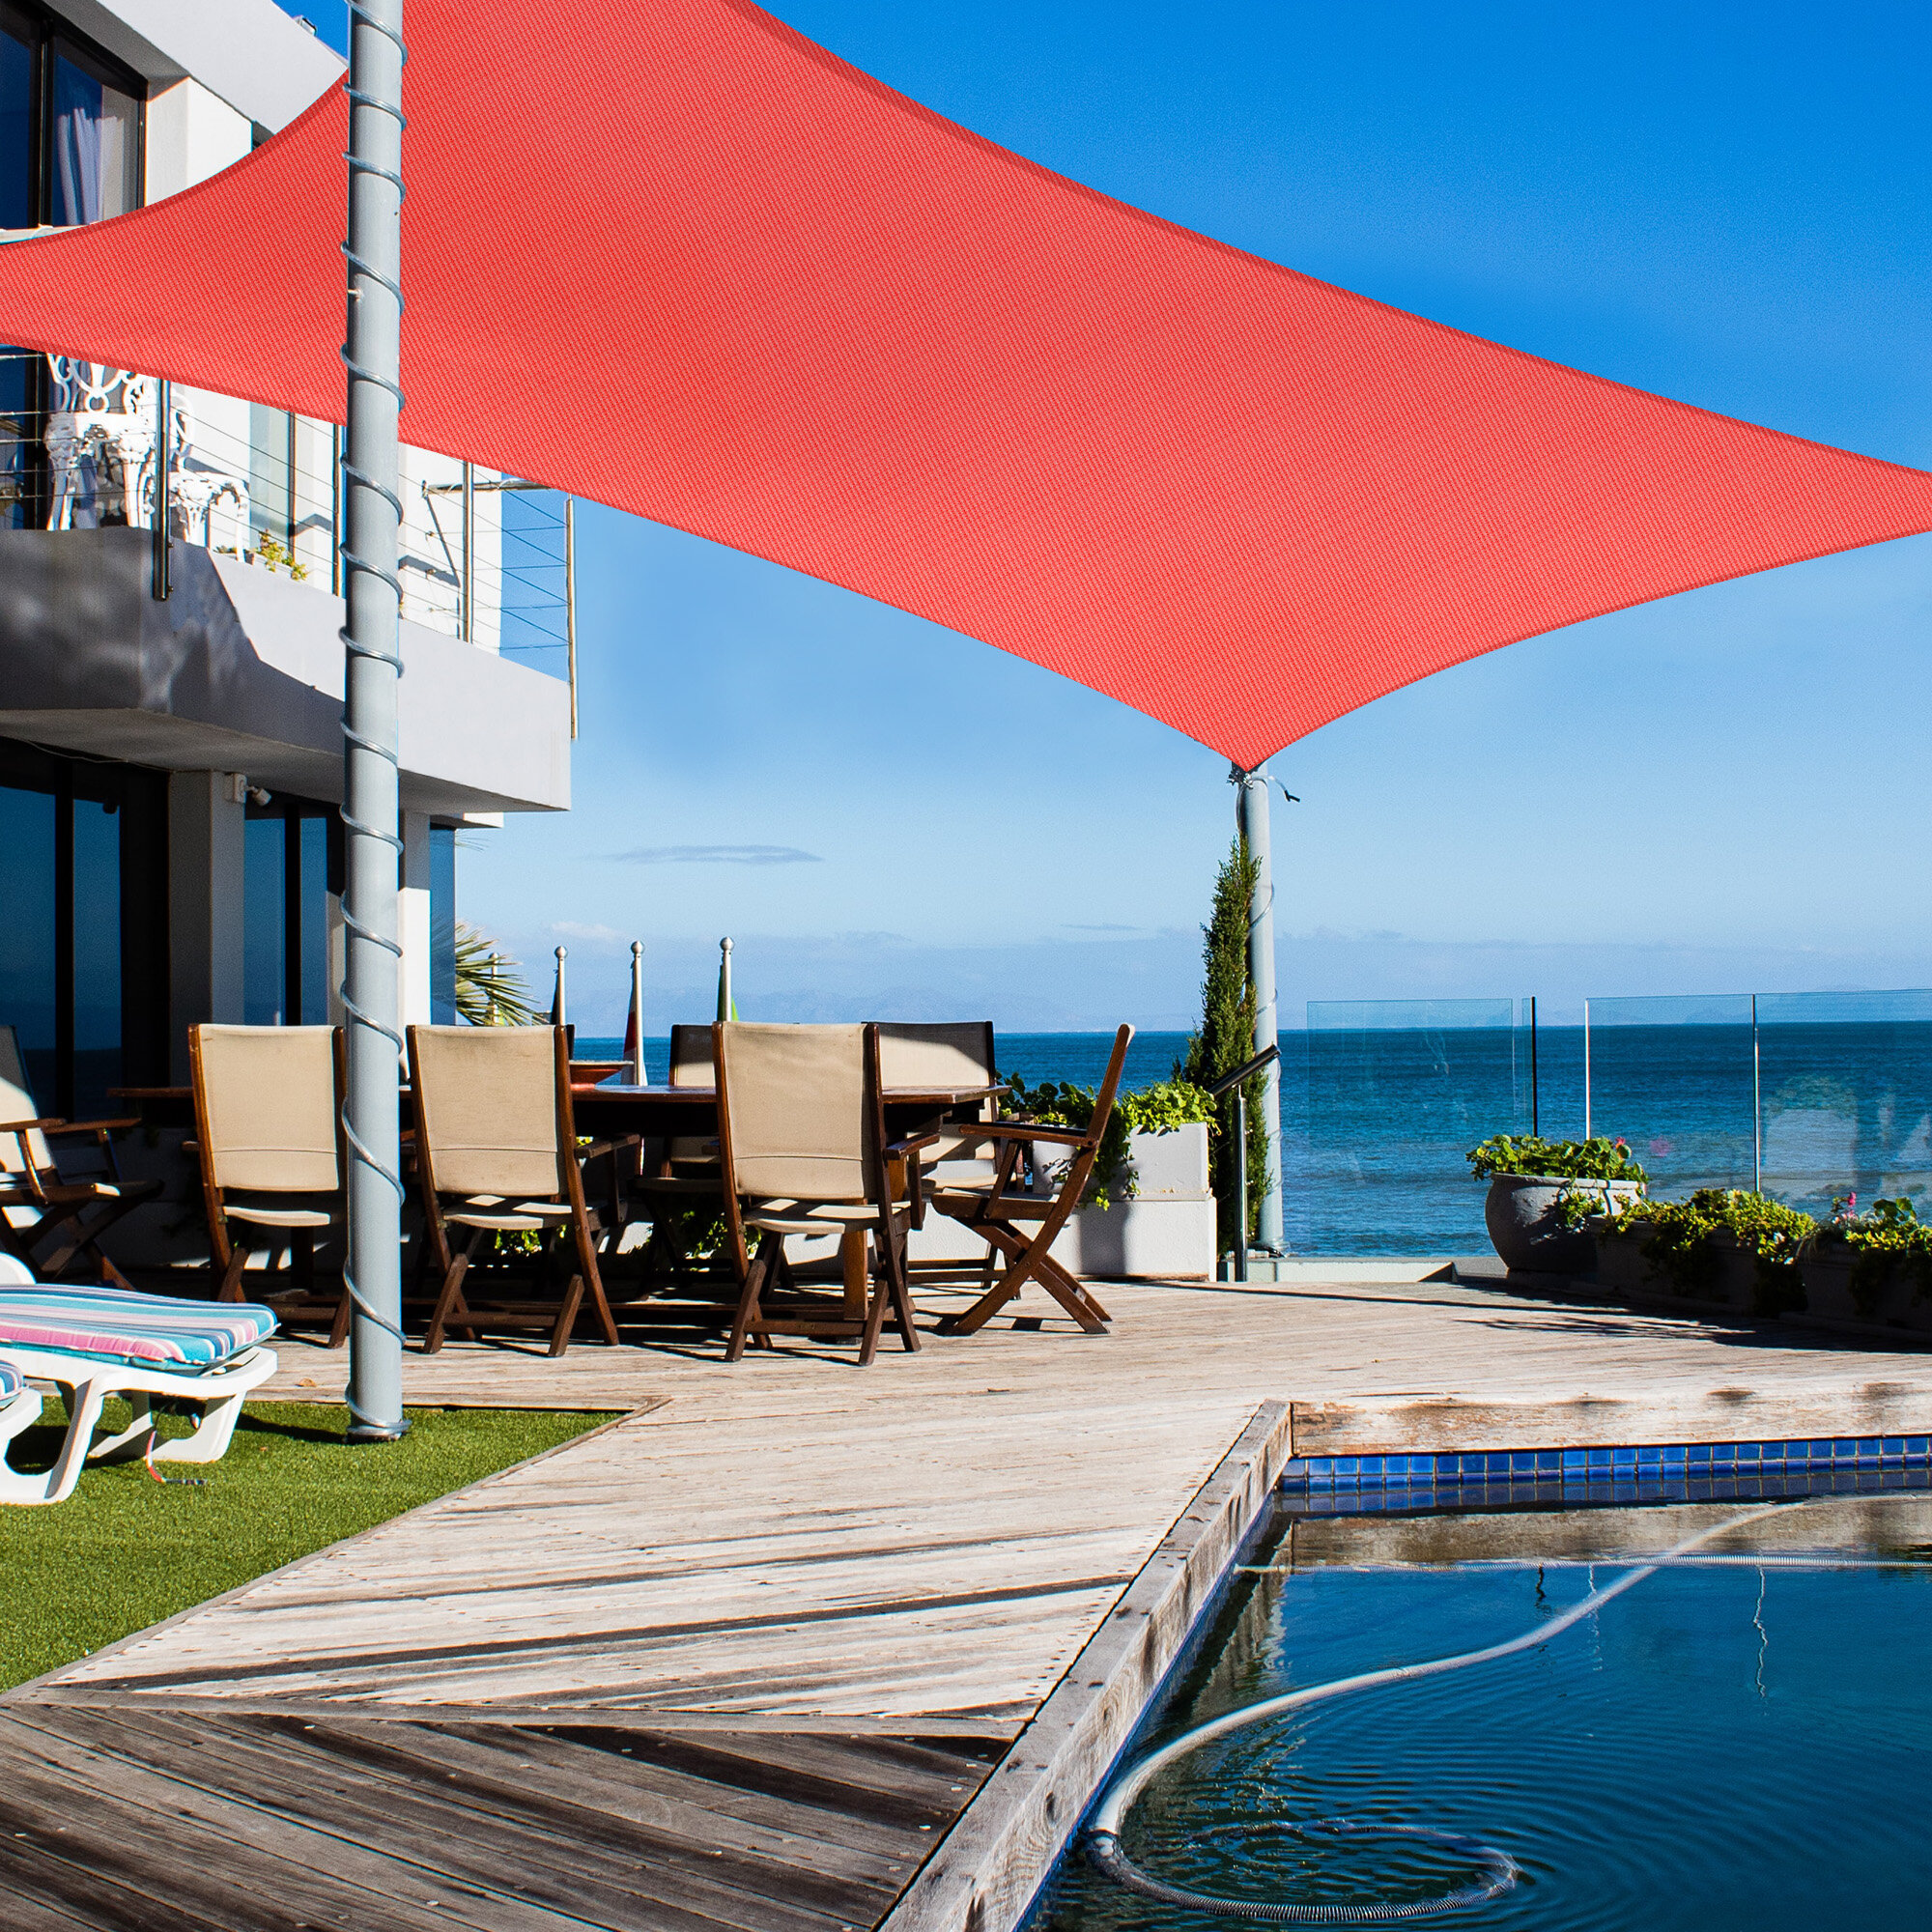 7'X13' Rectangle Sun Shade Sail UV Block Canopy Cover Garden Pool Outdoor 